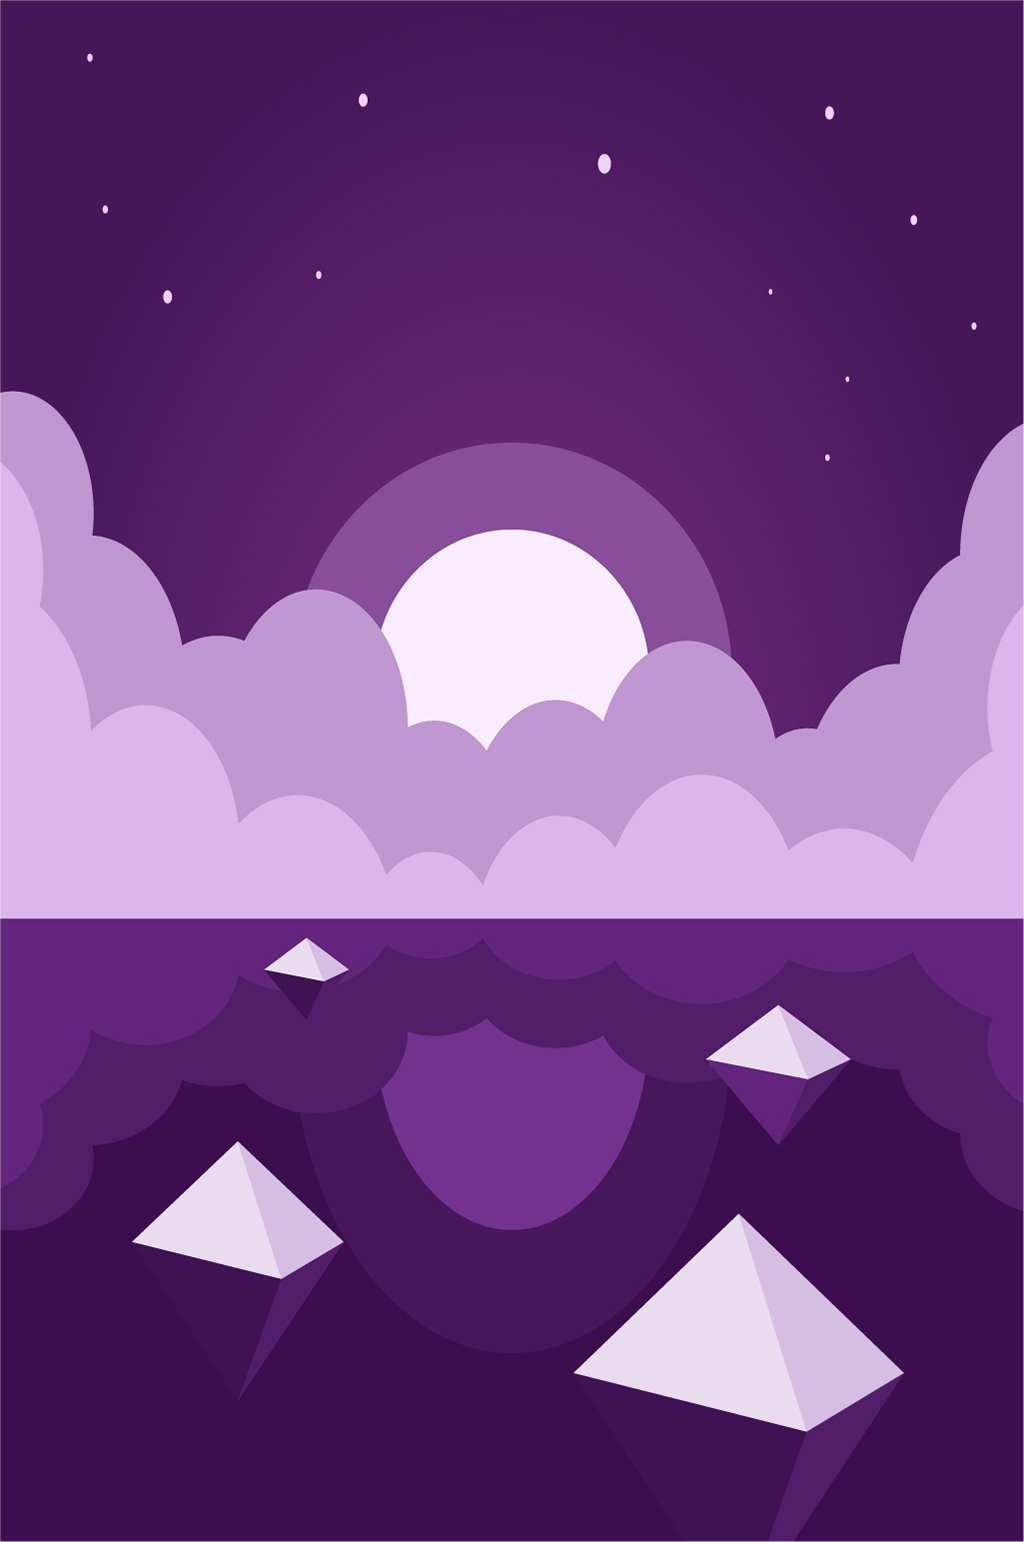 紫色夜晚海边风景插画背景素材